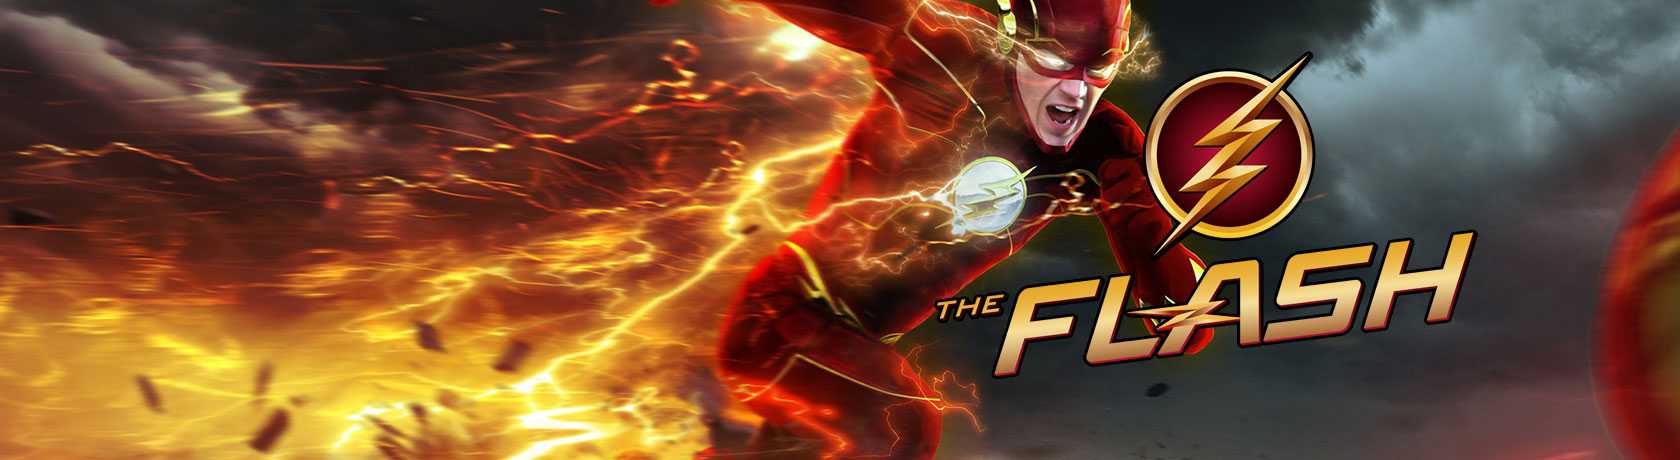 The Flash 7.Sezon 1.Bölüm izle